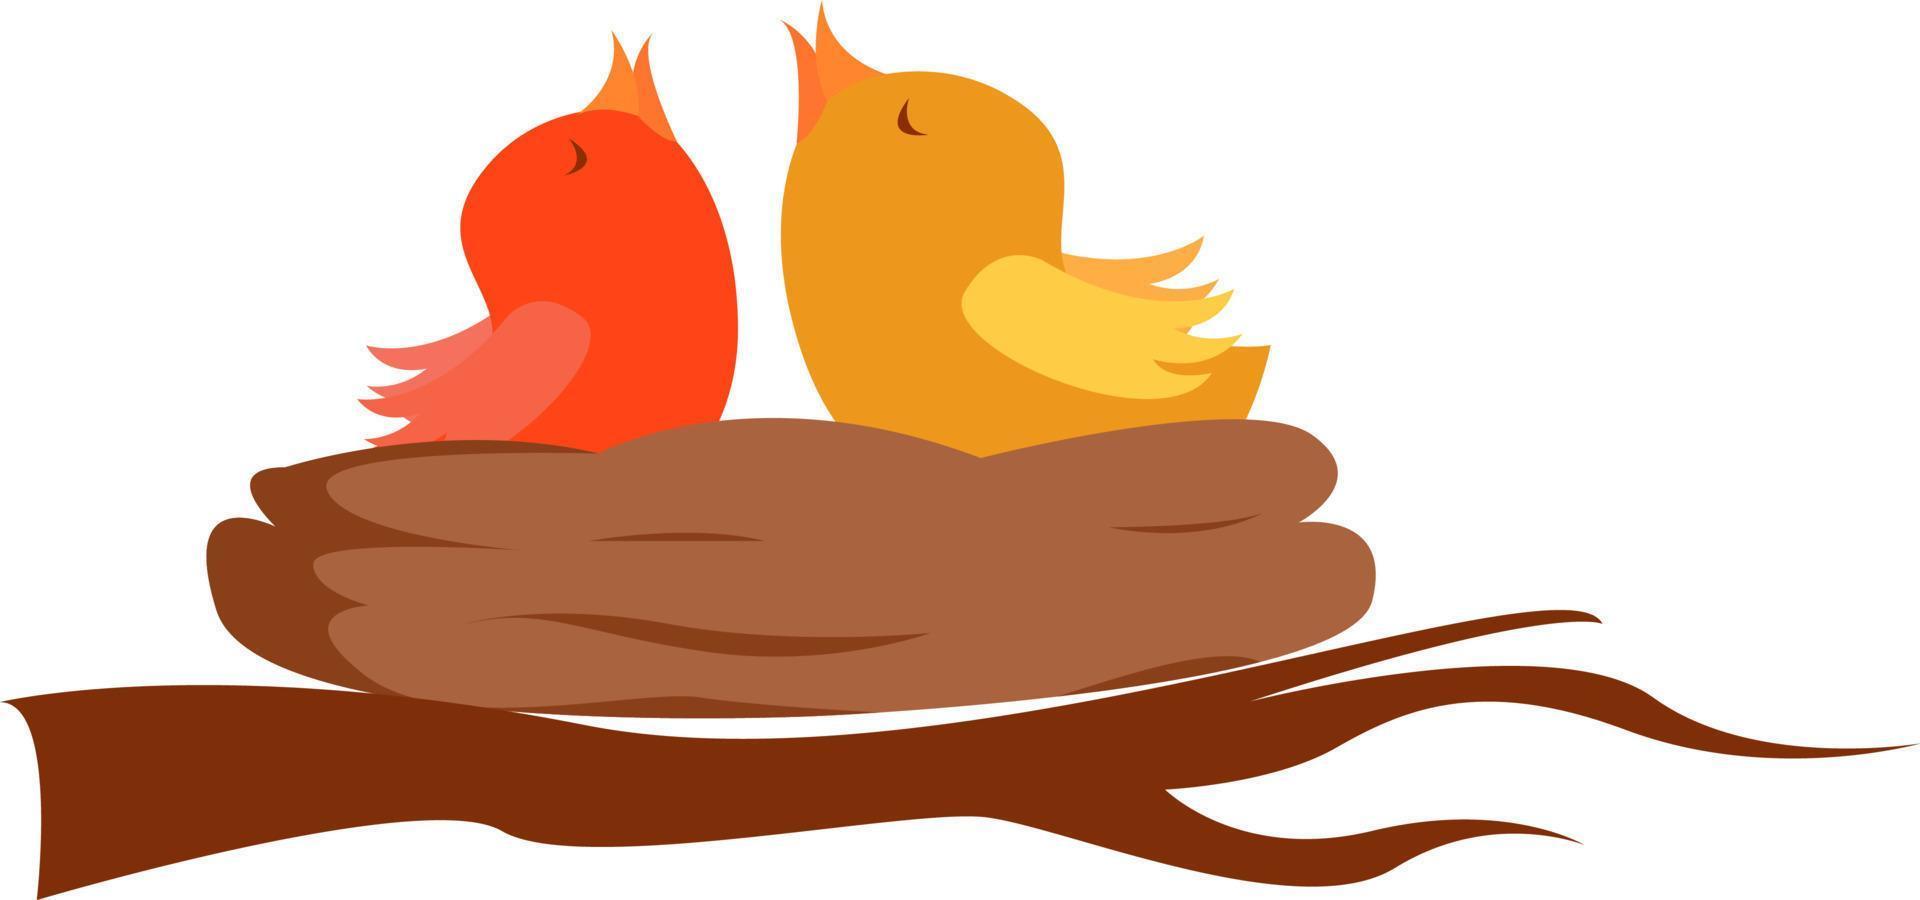 Chicks in nest, illustration, vector on white background.